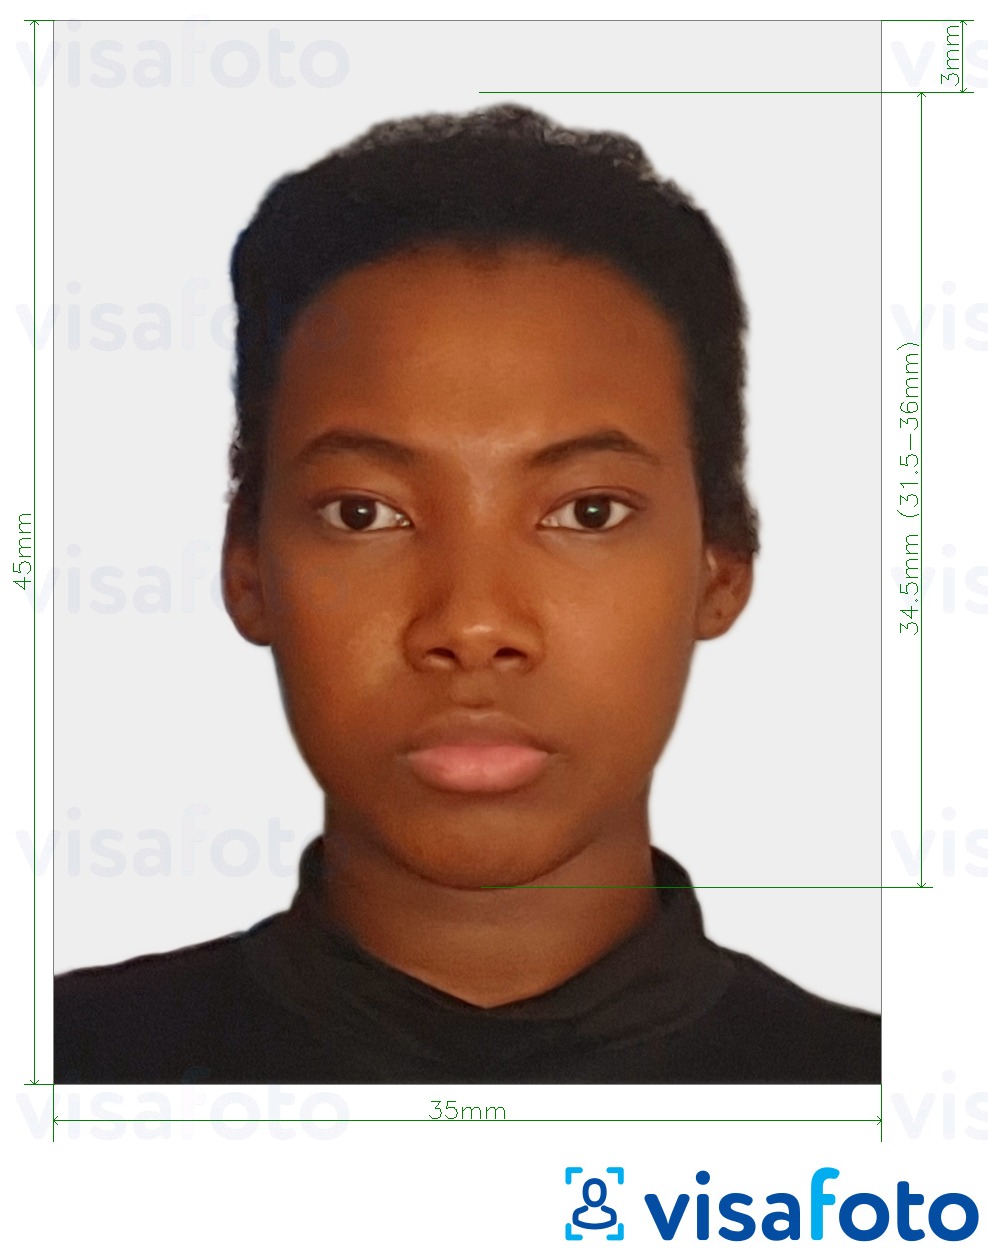 Nuotraukos pavyzdys Zambijos viza 35x45 mm (3,5x4,5 cm) su tikslaus dydžio specifikacija